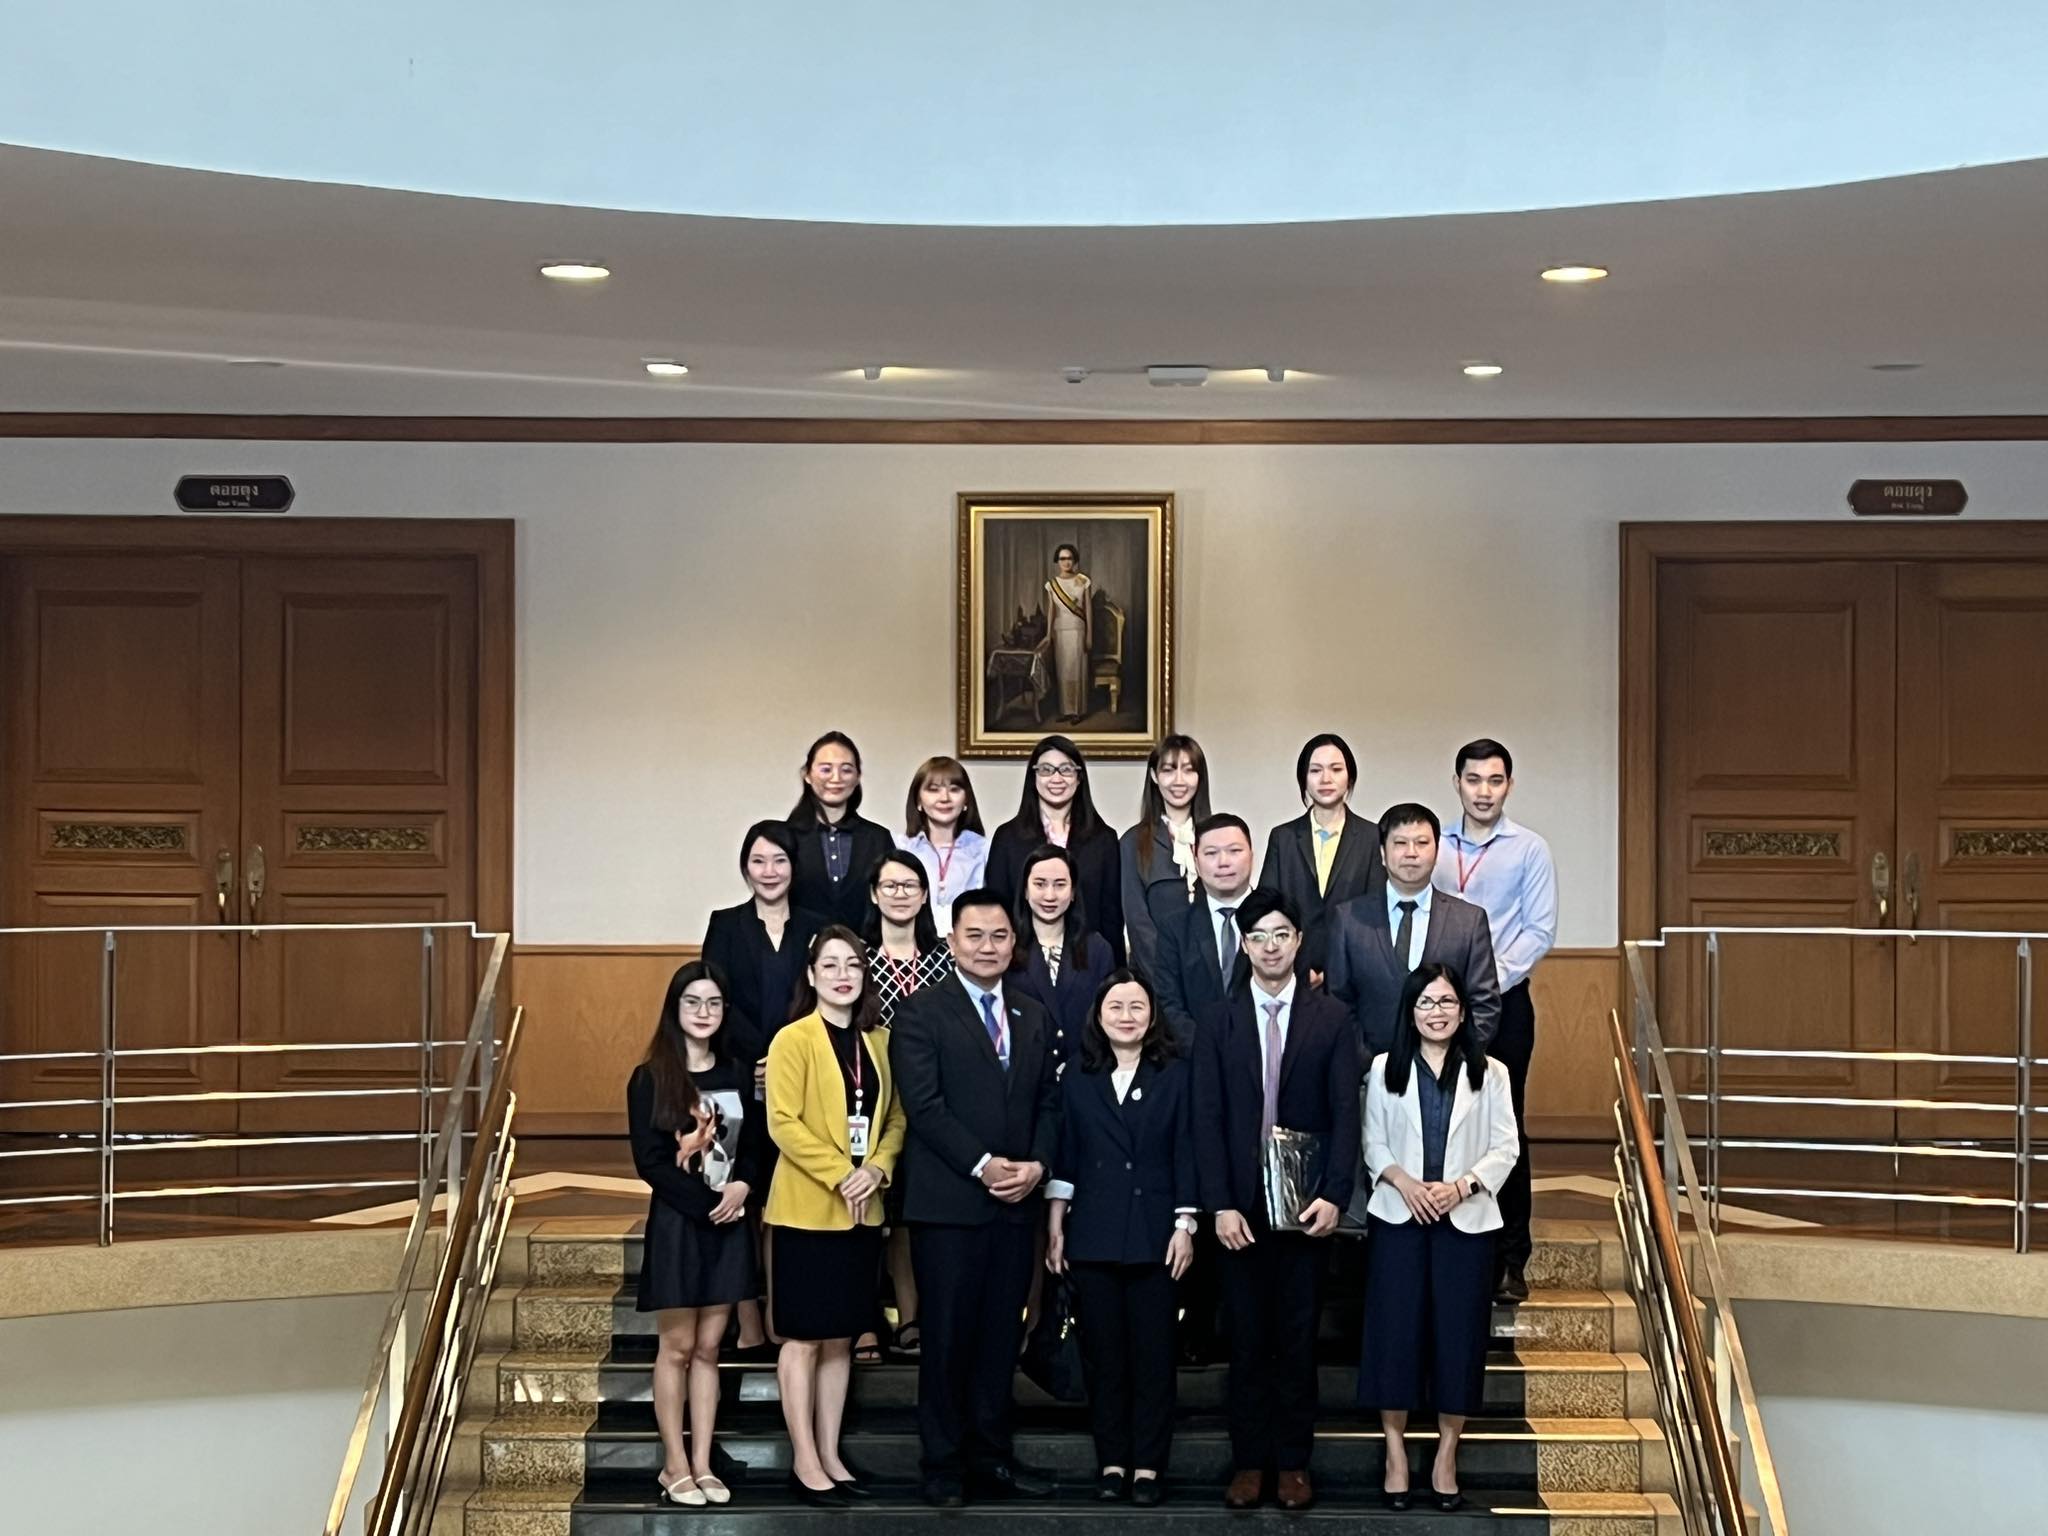 สำนักวิชาจีนวิทยาร่วมกับส่วนจัดหางานและฝึกงานของนักศึกษาให้การต้อนรับคณะดูงานจากสำนักงานแรงงาน ณ เมืองฮ่องกง ร่วมกับ The Galaxy Entertainment Group เพื่อพูดคุยเกี่ยวกับการแนะแนวโอกาสสำหรับนักศึกษาและศิษย์เก่าในการทำงานที่เขตบริหารพิเศษมาเก๊า